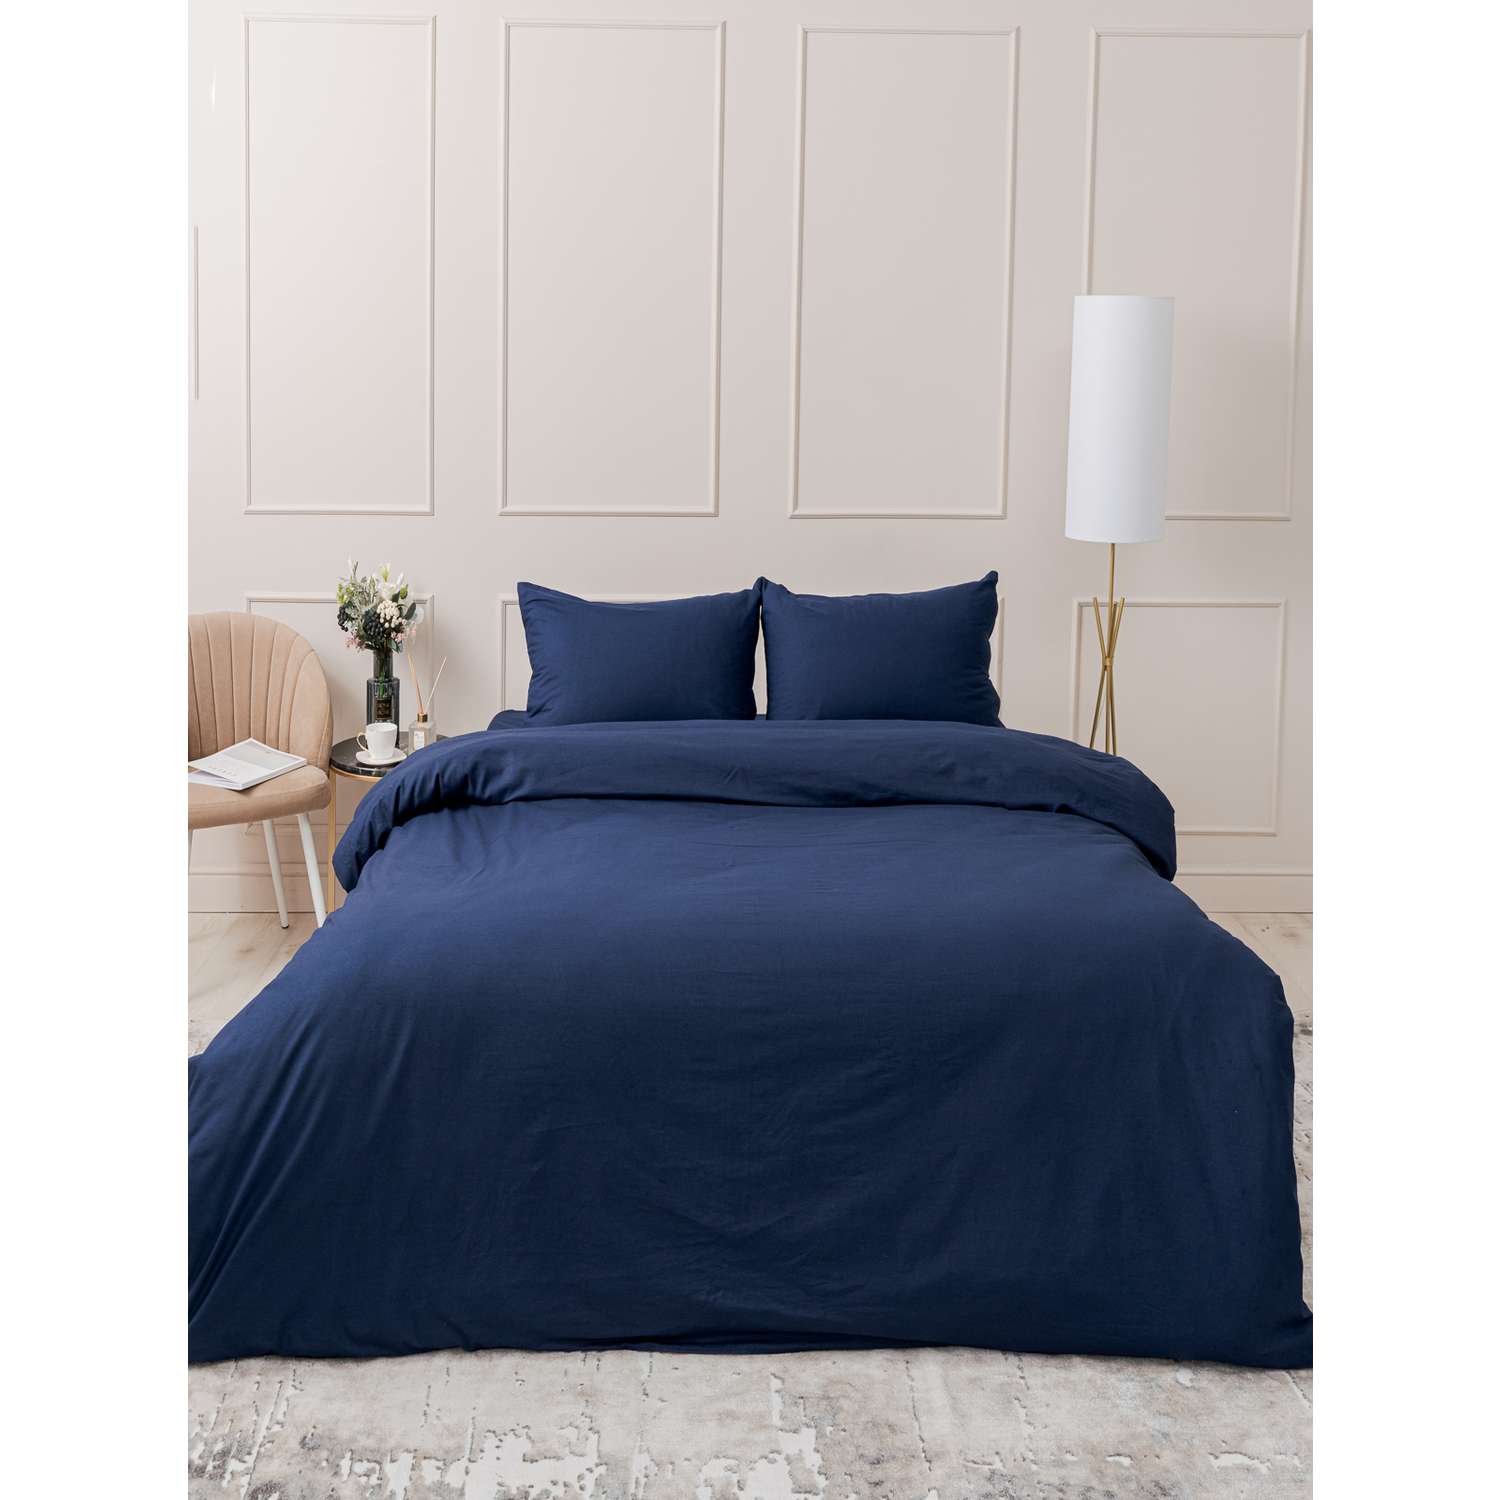 Комплект постельного белья IDEASON Поплин 3 предмета 2.0 спальный темно-синий - фото 6